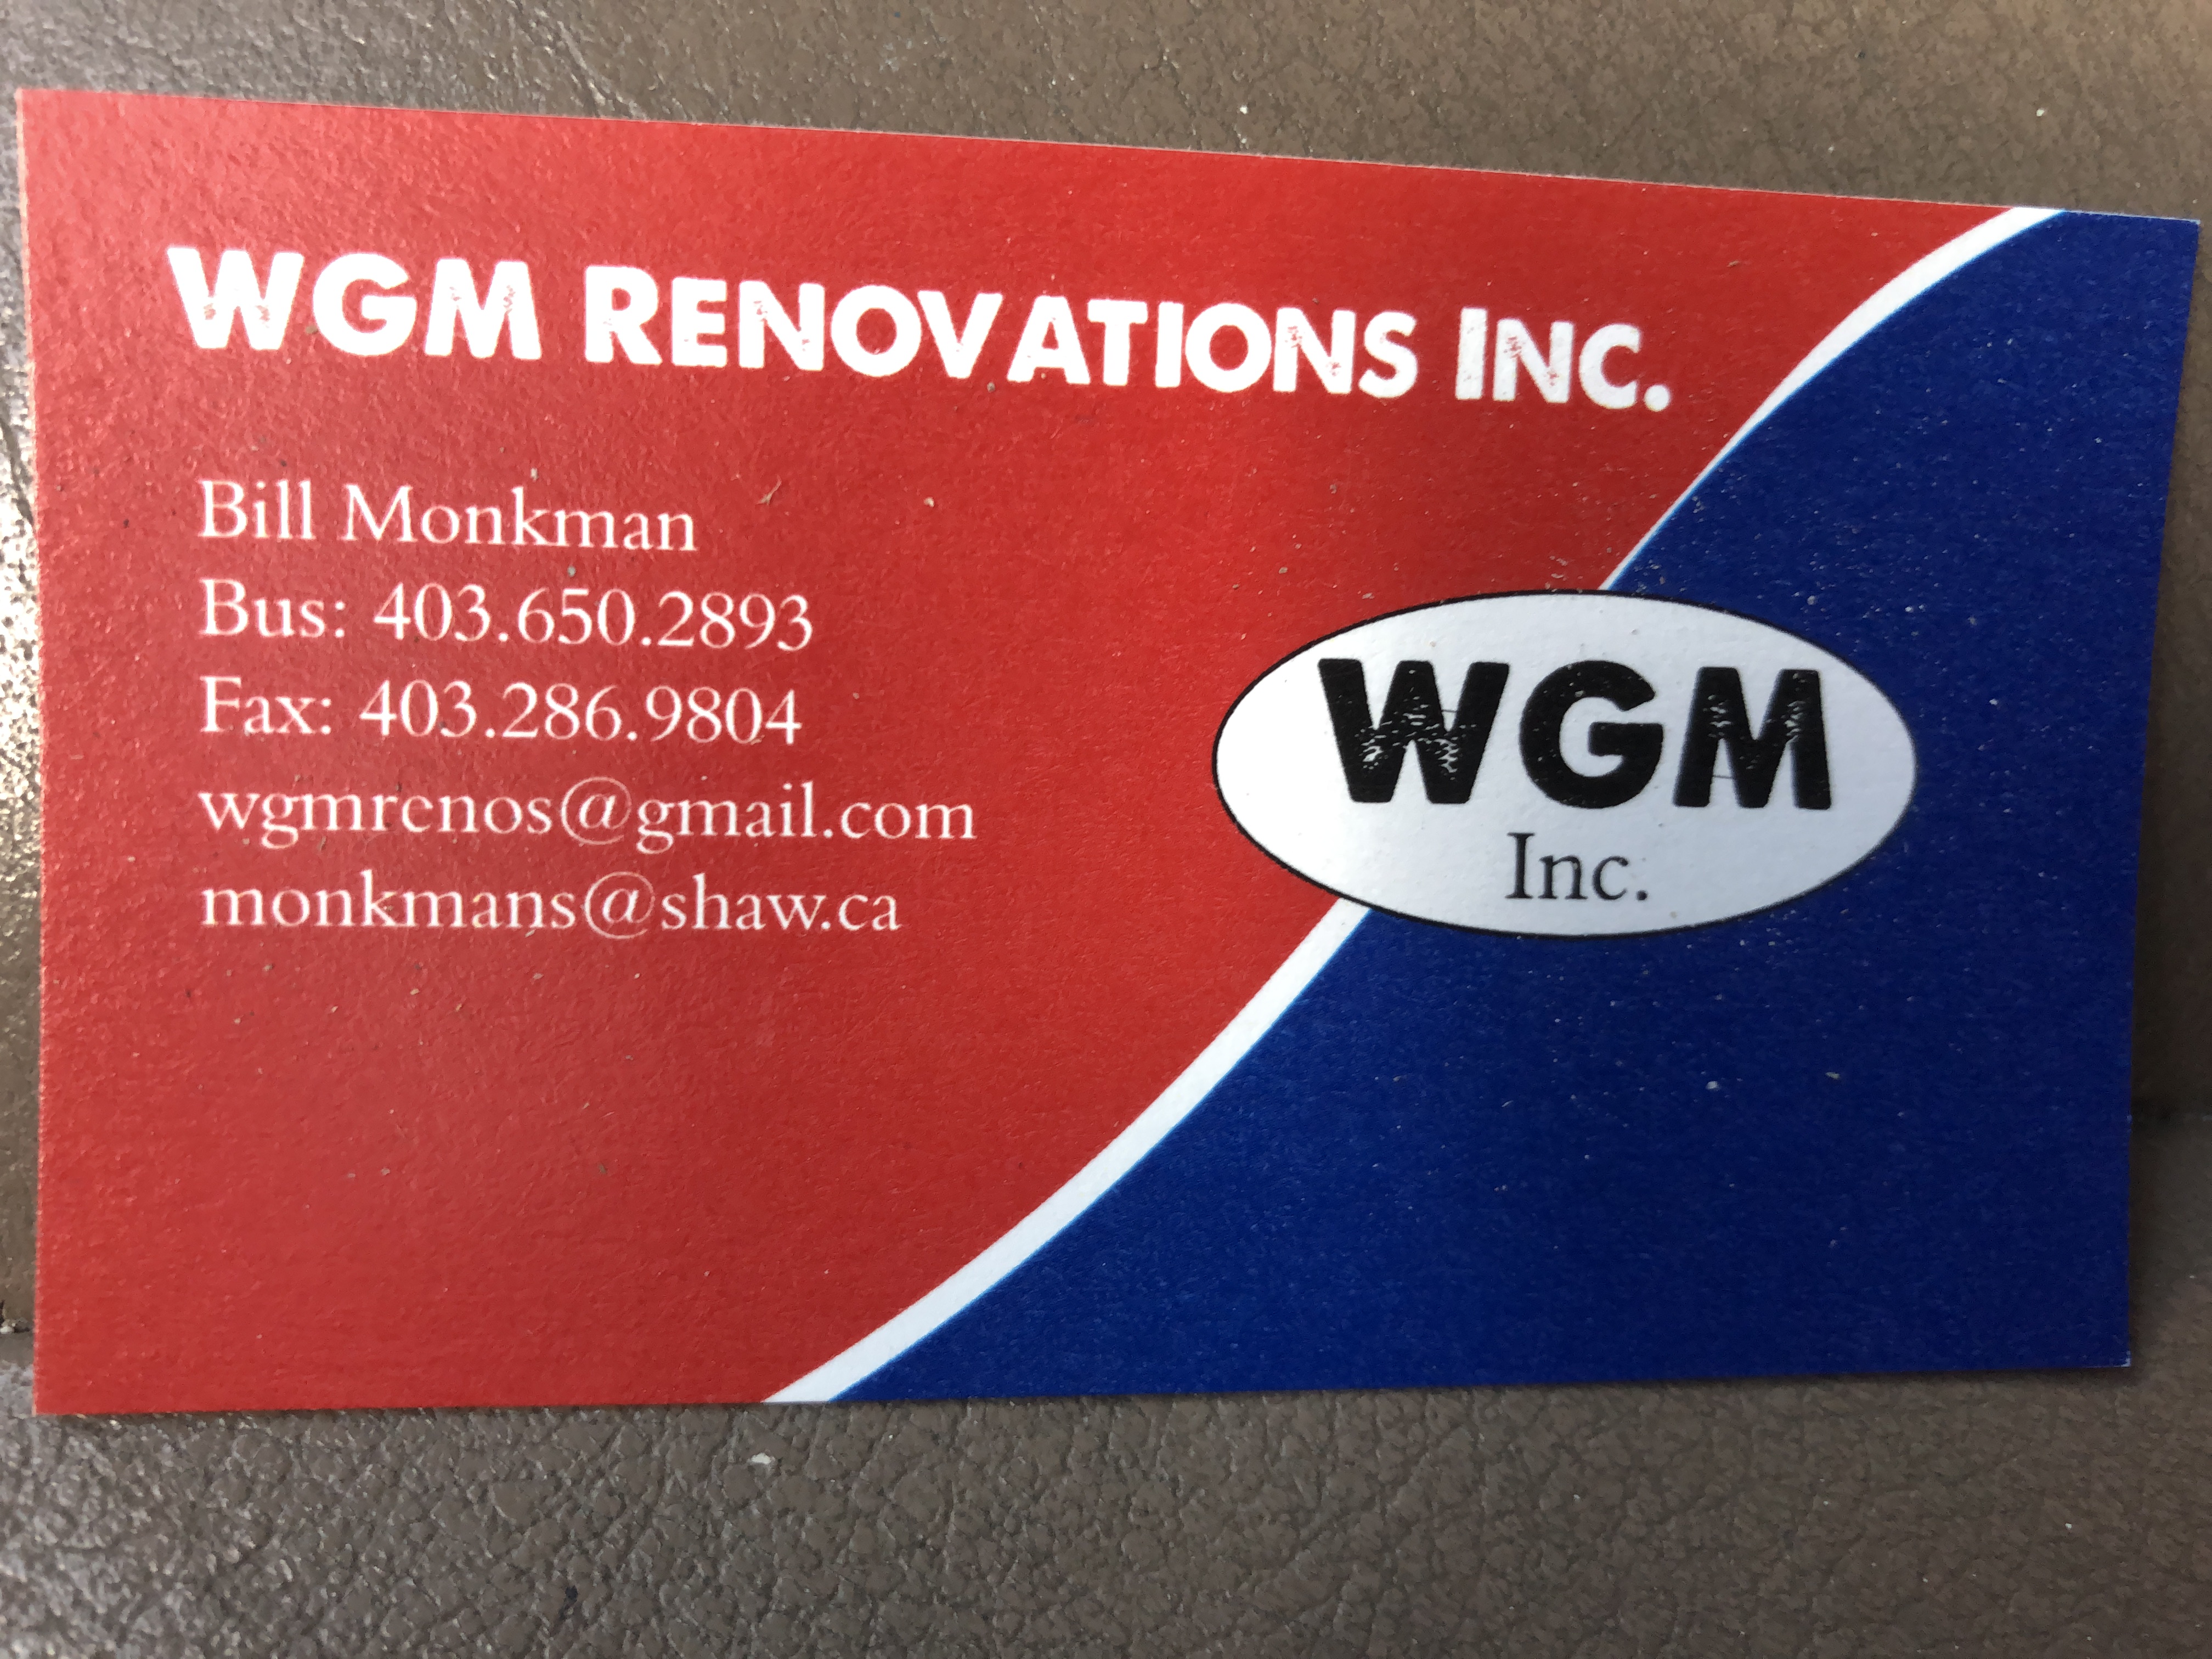 WGM renovations Inc.